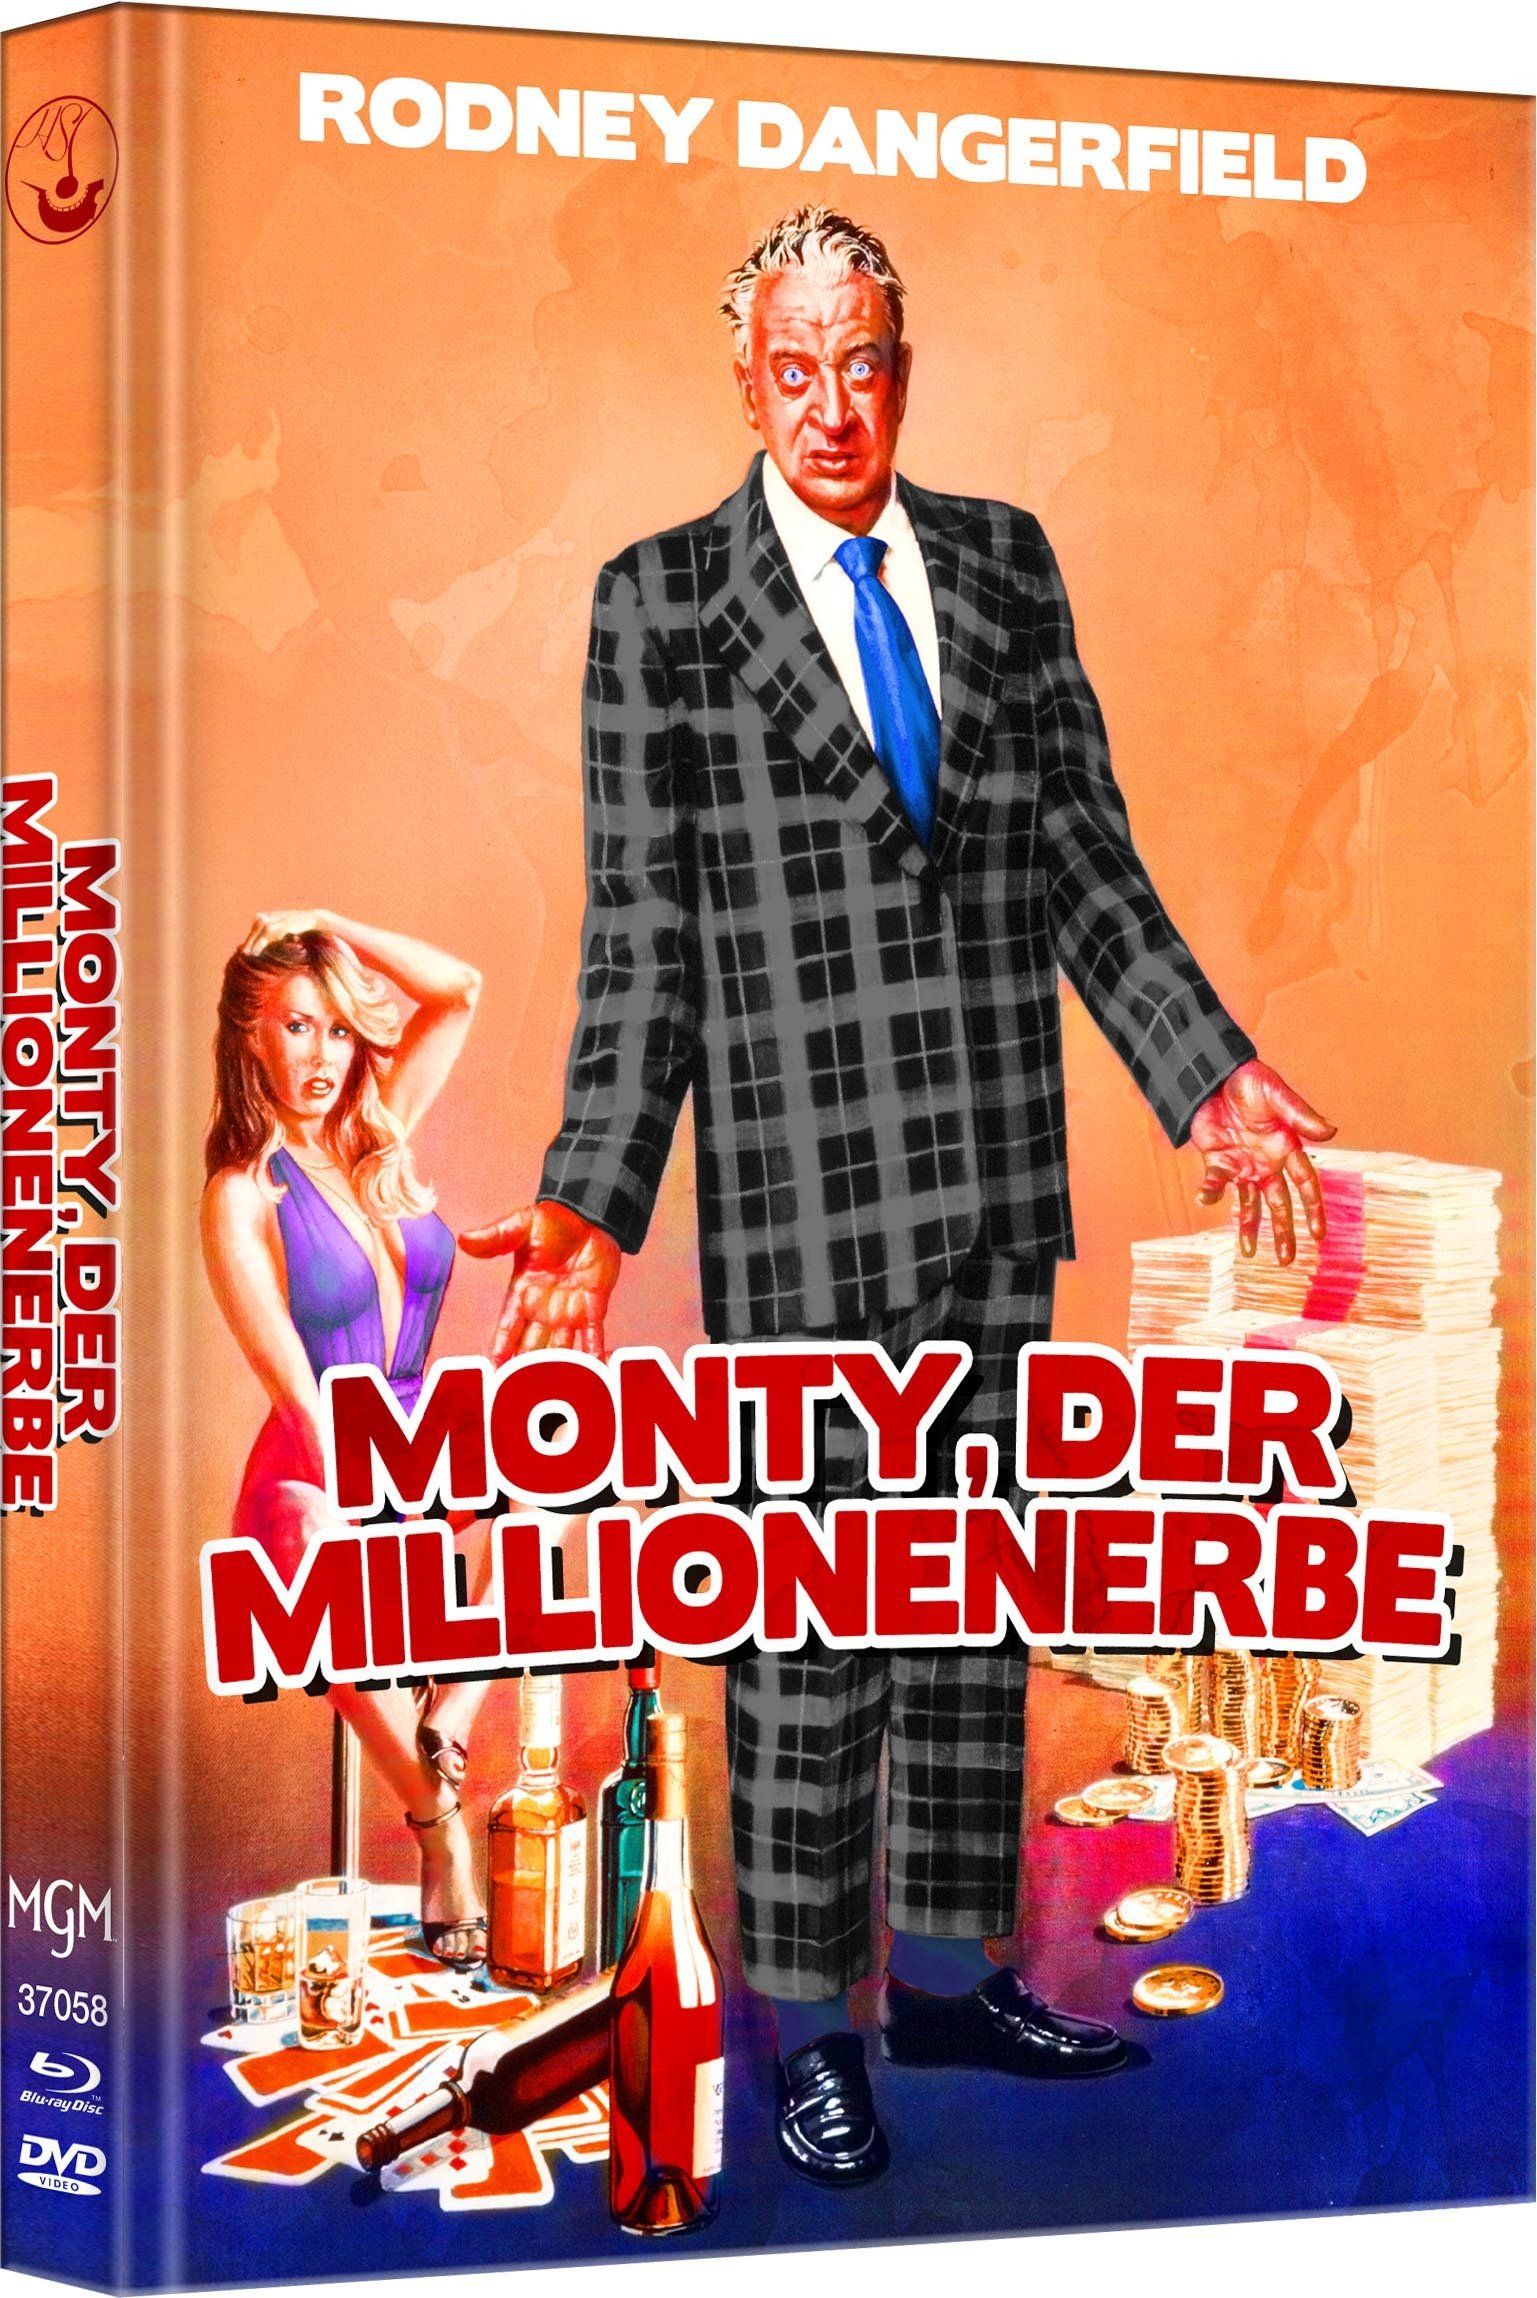 MediaBook Monty, der Millionenerbe